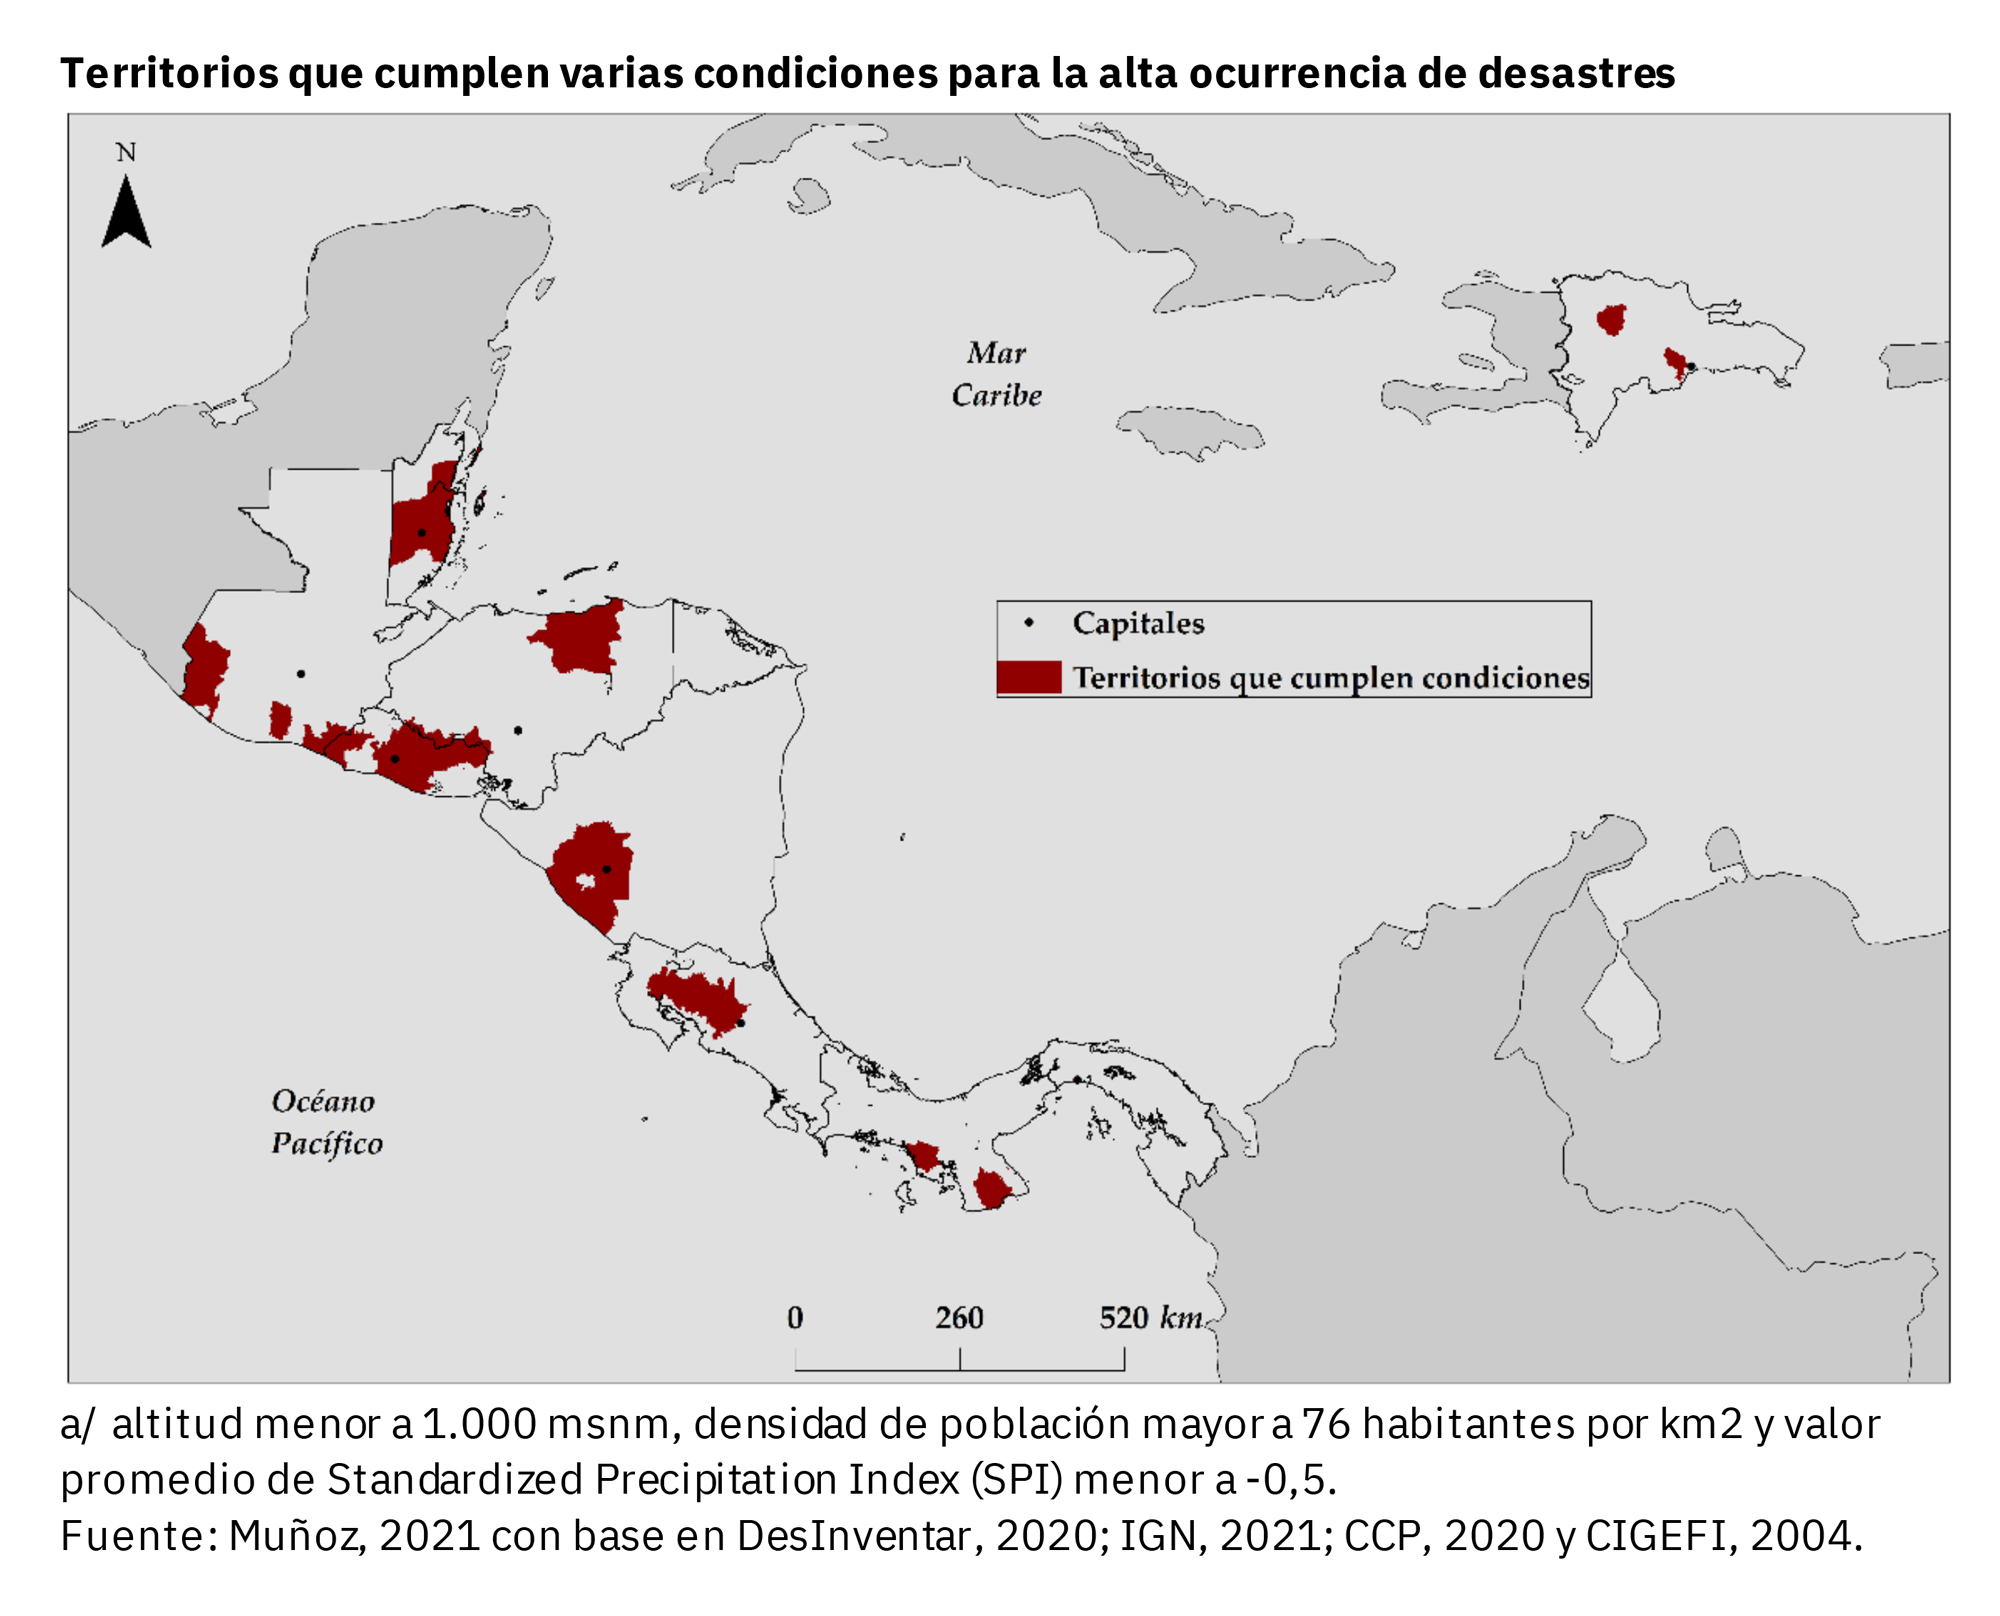 Mapa de Centroamérica y República Dominicana donde los principales territorios propensos a desastres